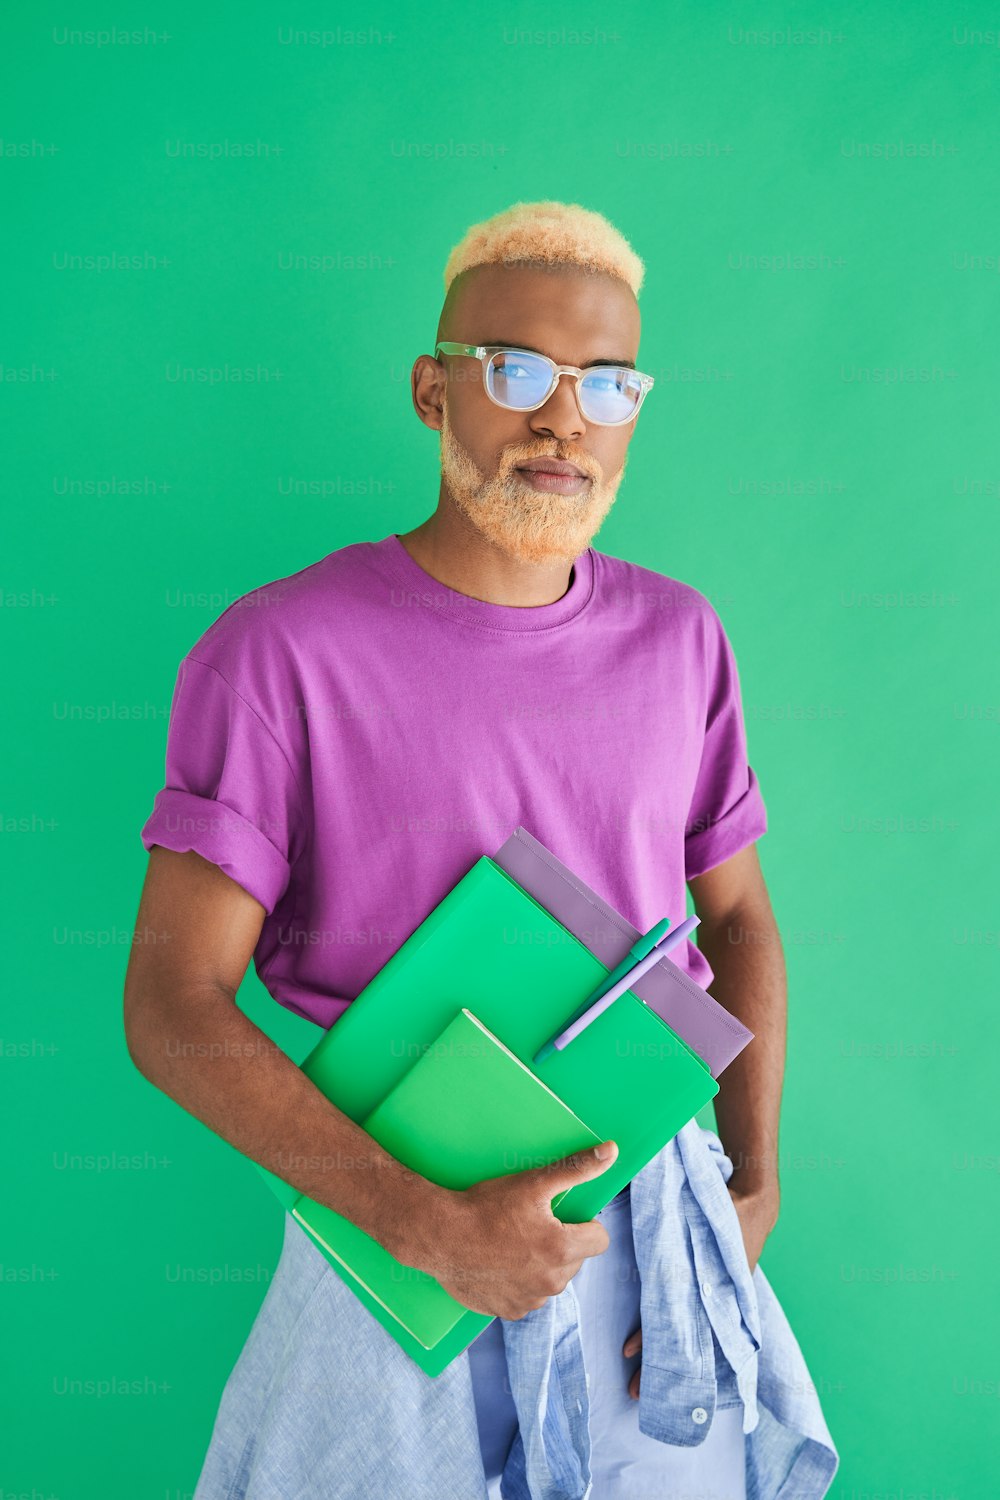 Zur Arbeit gehen. Vertikale Aufnahme des gemischtrassigen blonden Mannes, der eine Brille trägt und Ordner und Notizbuch hält, während er über der grünen Wand posiert